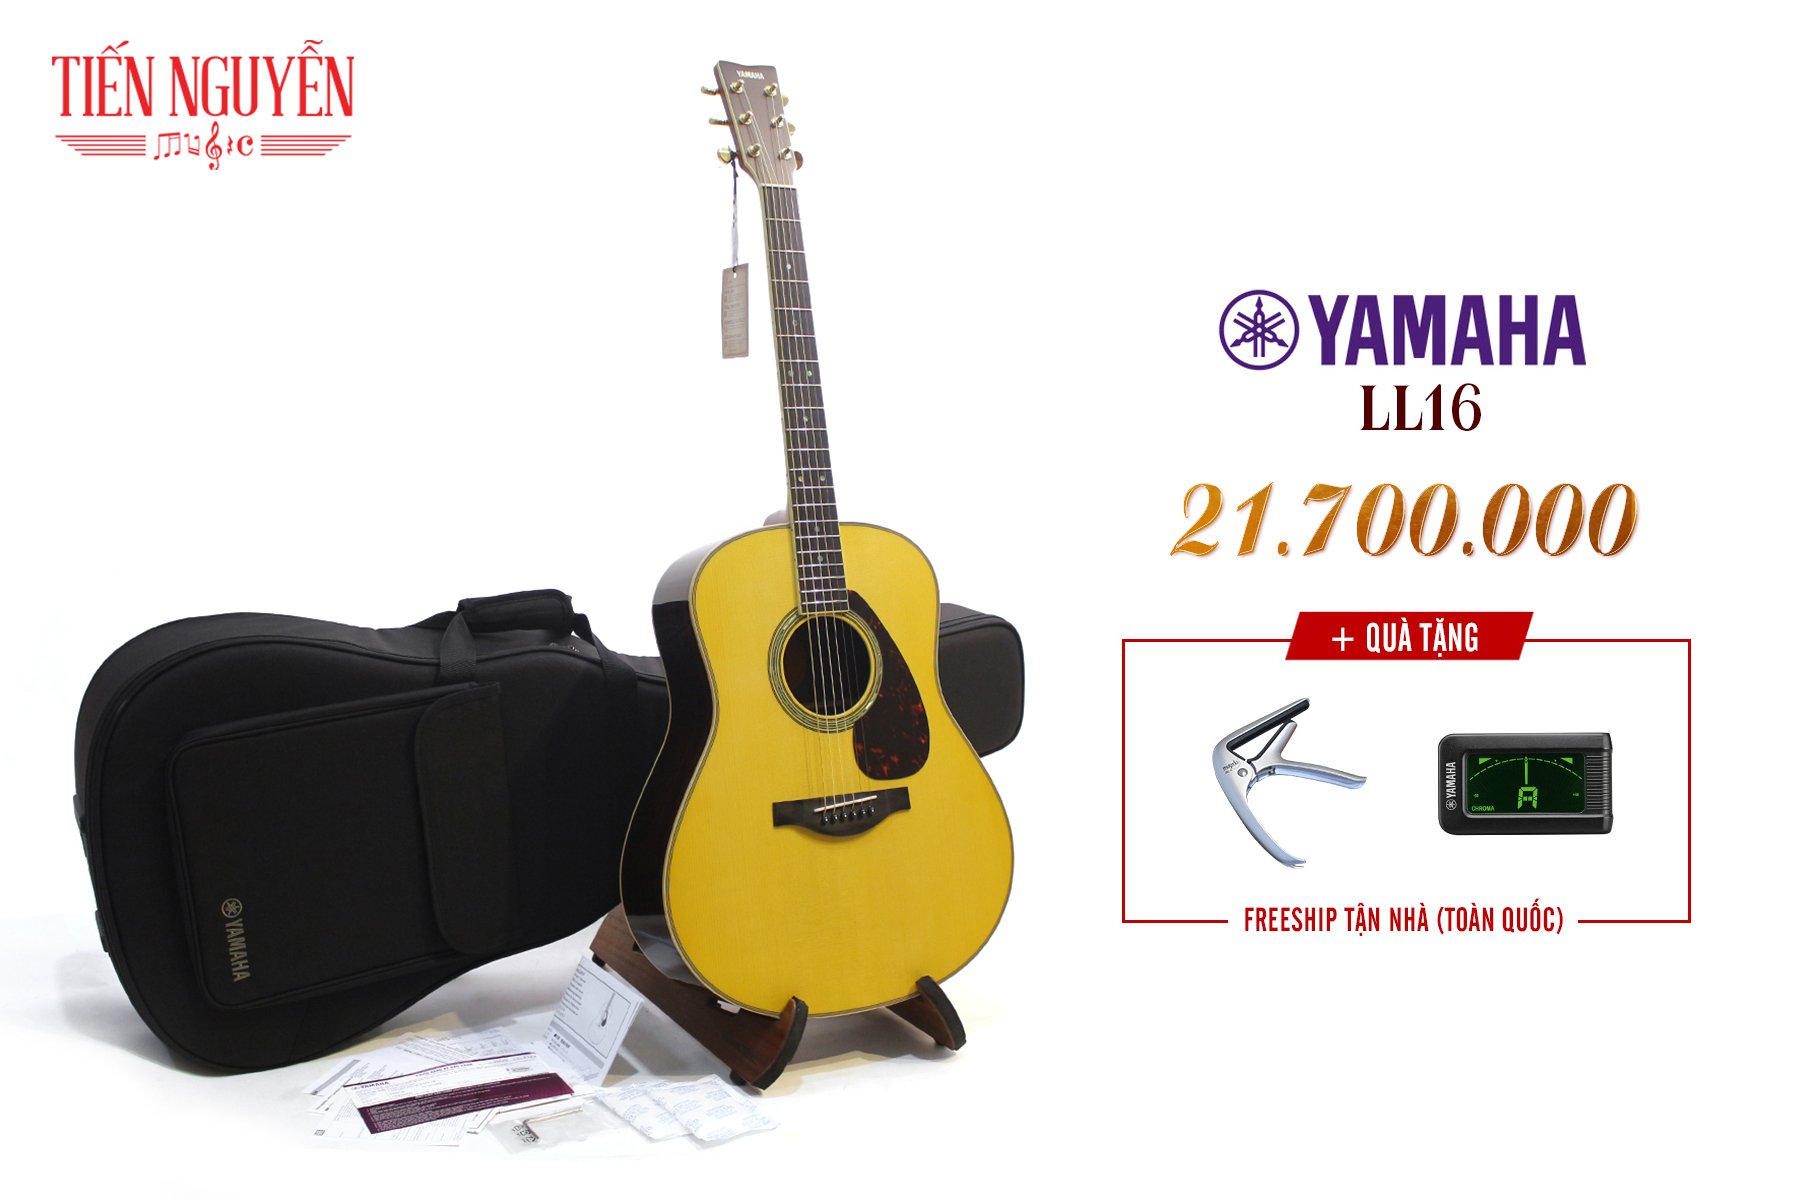 Guitar Yamaha LL16 - Vị thế mới đẳng cấp cấu hình full solid cao nhất phân khúc với mức giá cực hời